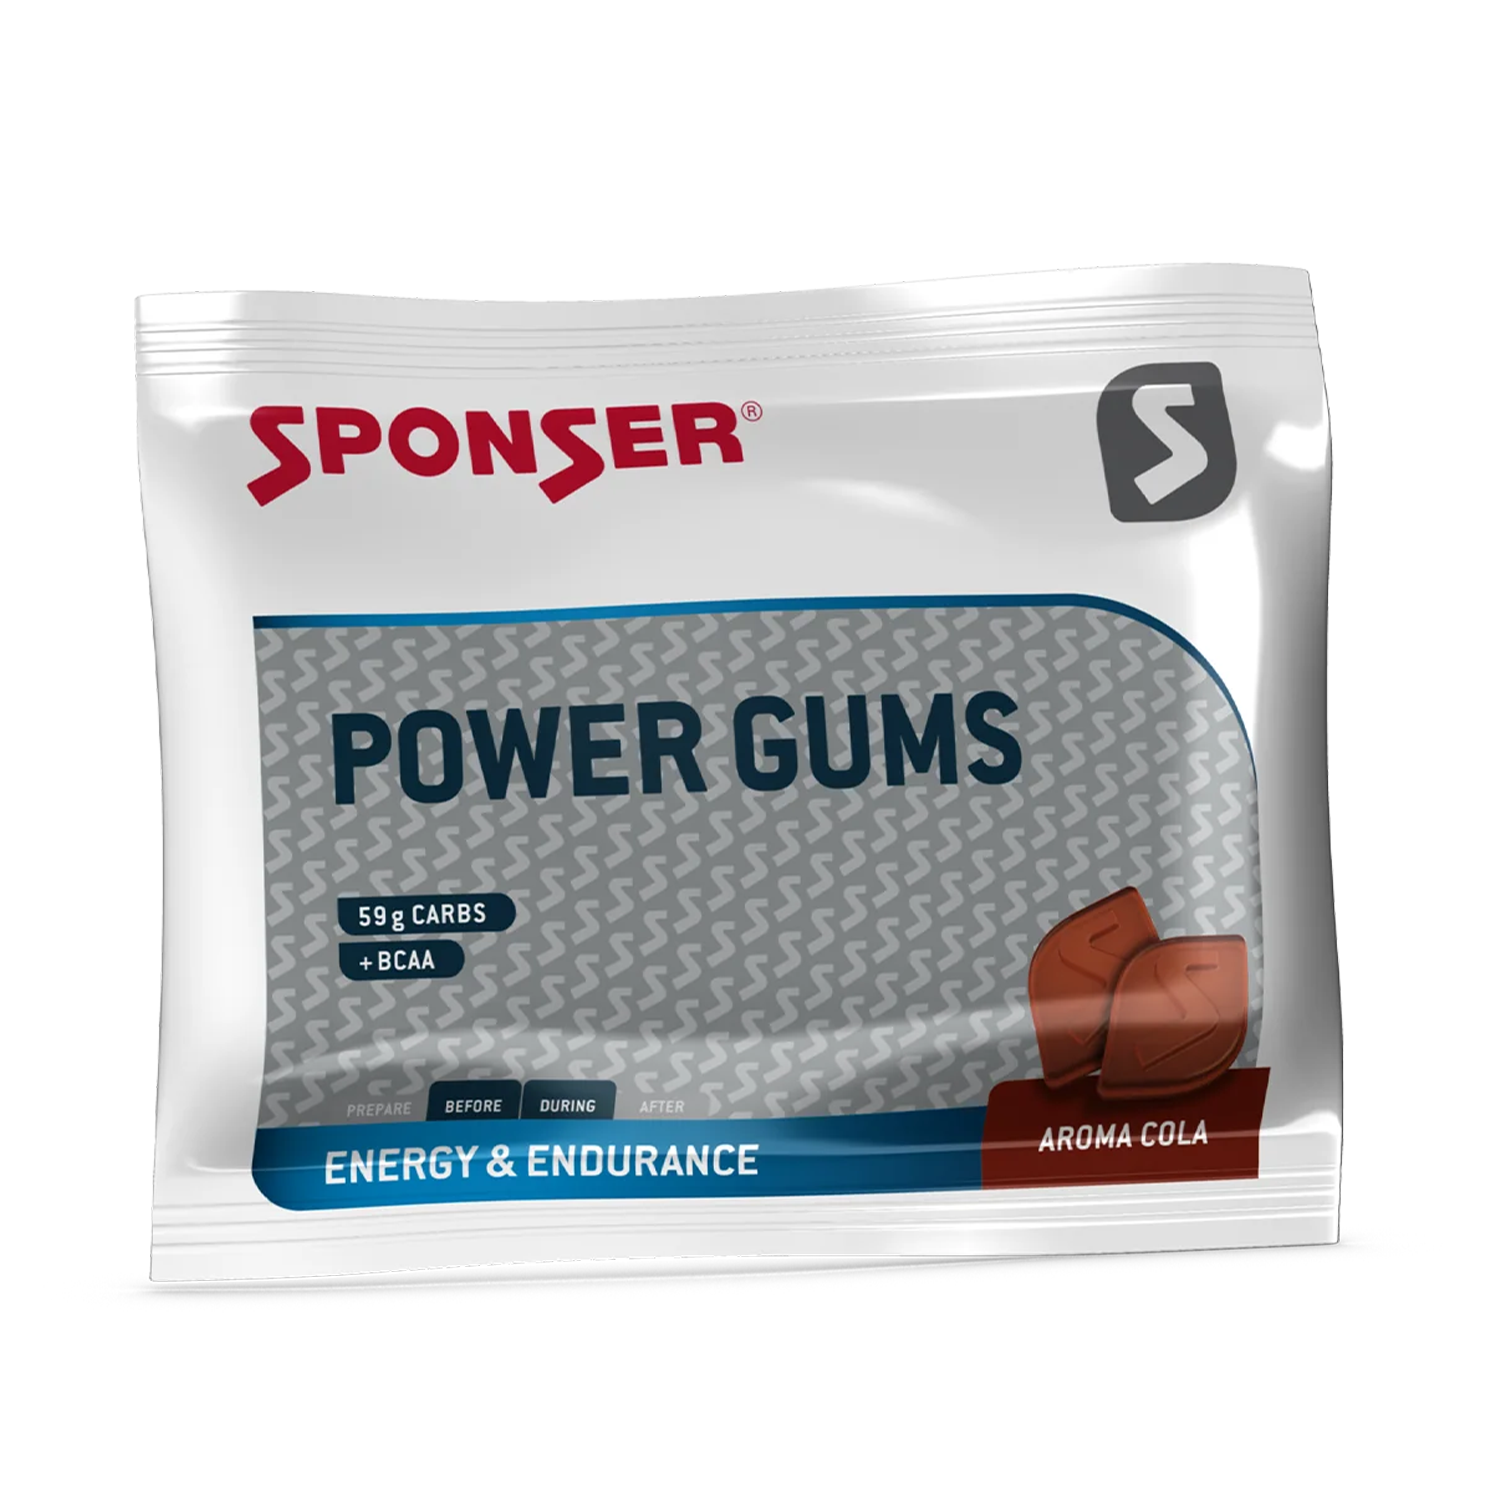 Sponser power gums 58g